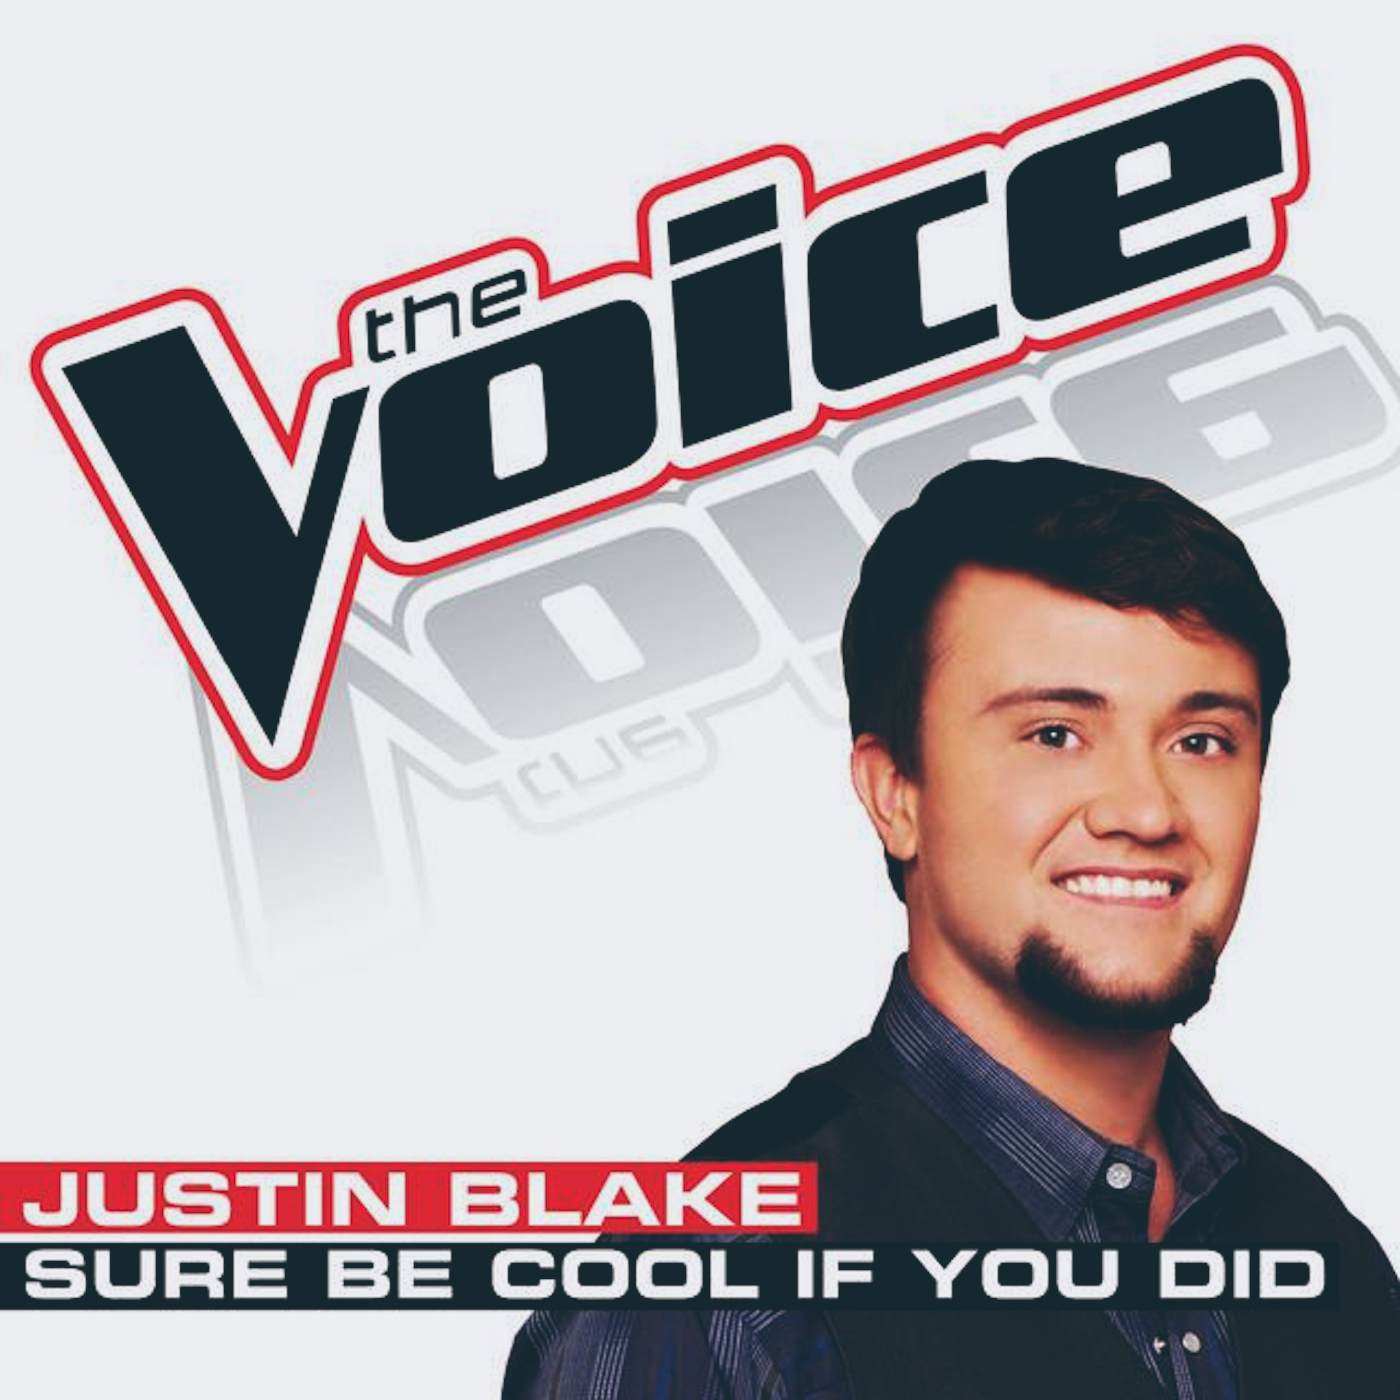 Justin Blake